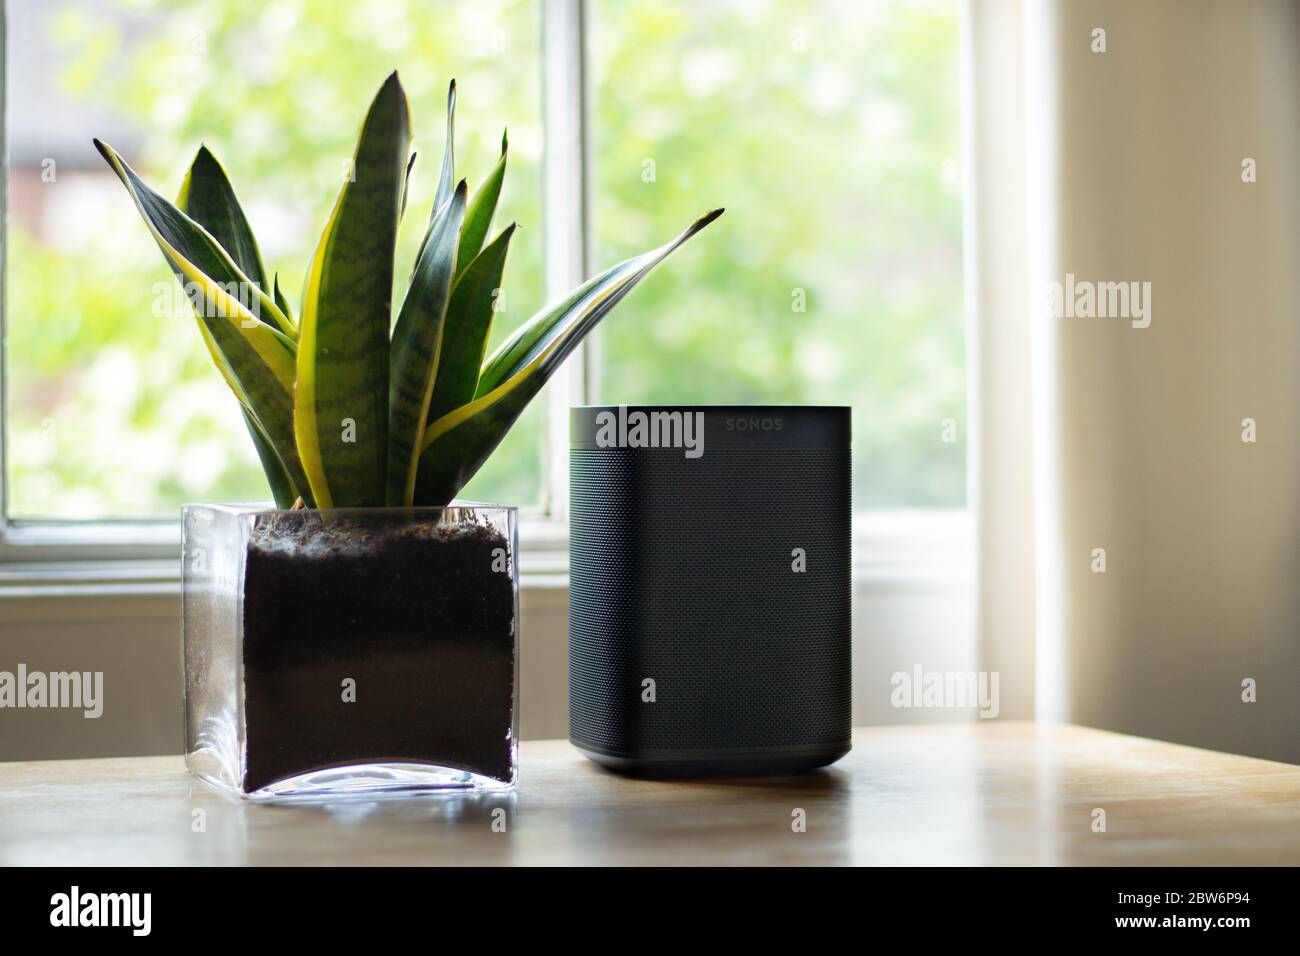 Londra, Regno Unito - Maggio 09 2020: Un diffusore Sonos posto accanto ad una pianta in una bella casa. Foto Stock